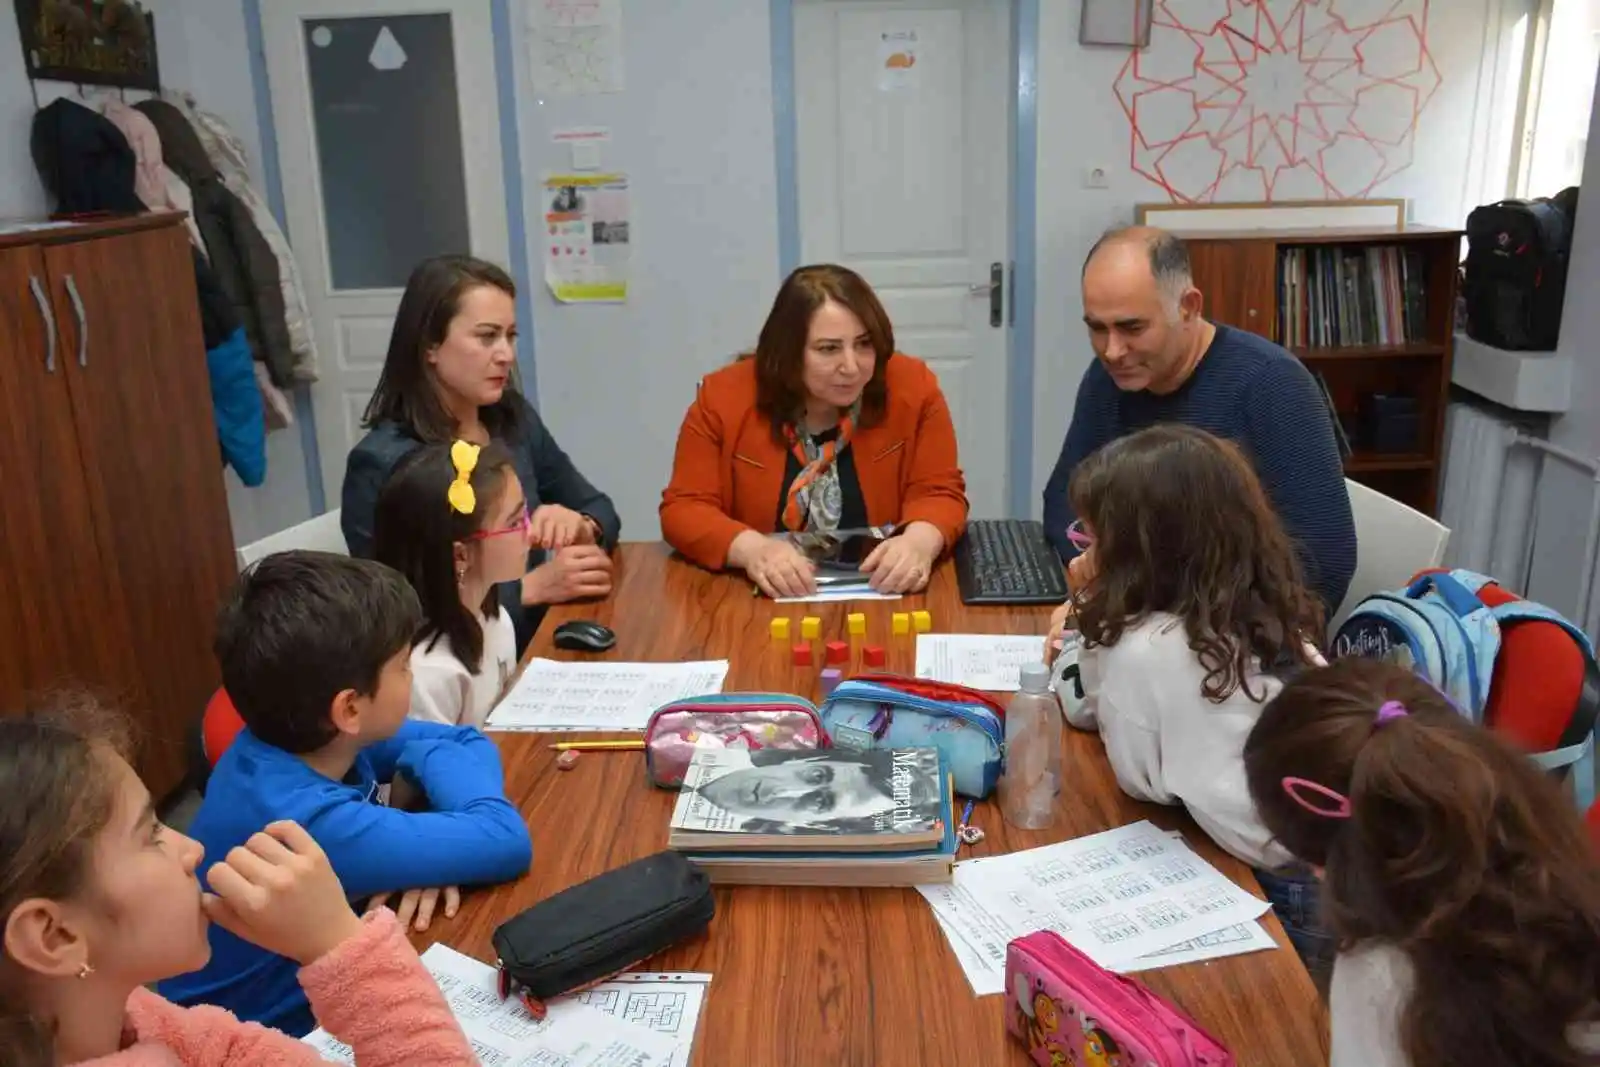 Eskişehir’de öğrenciler açılan kurslarla tatillerini verimli geçiriyor
